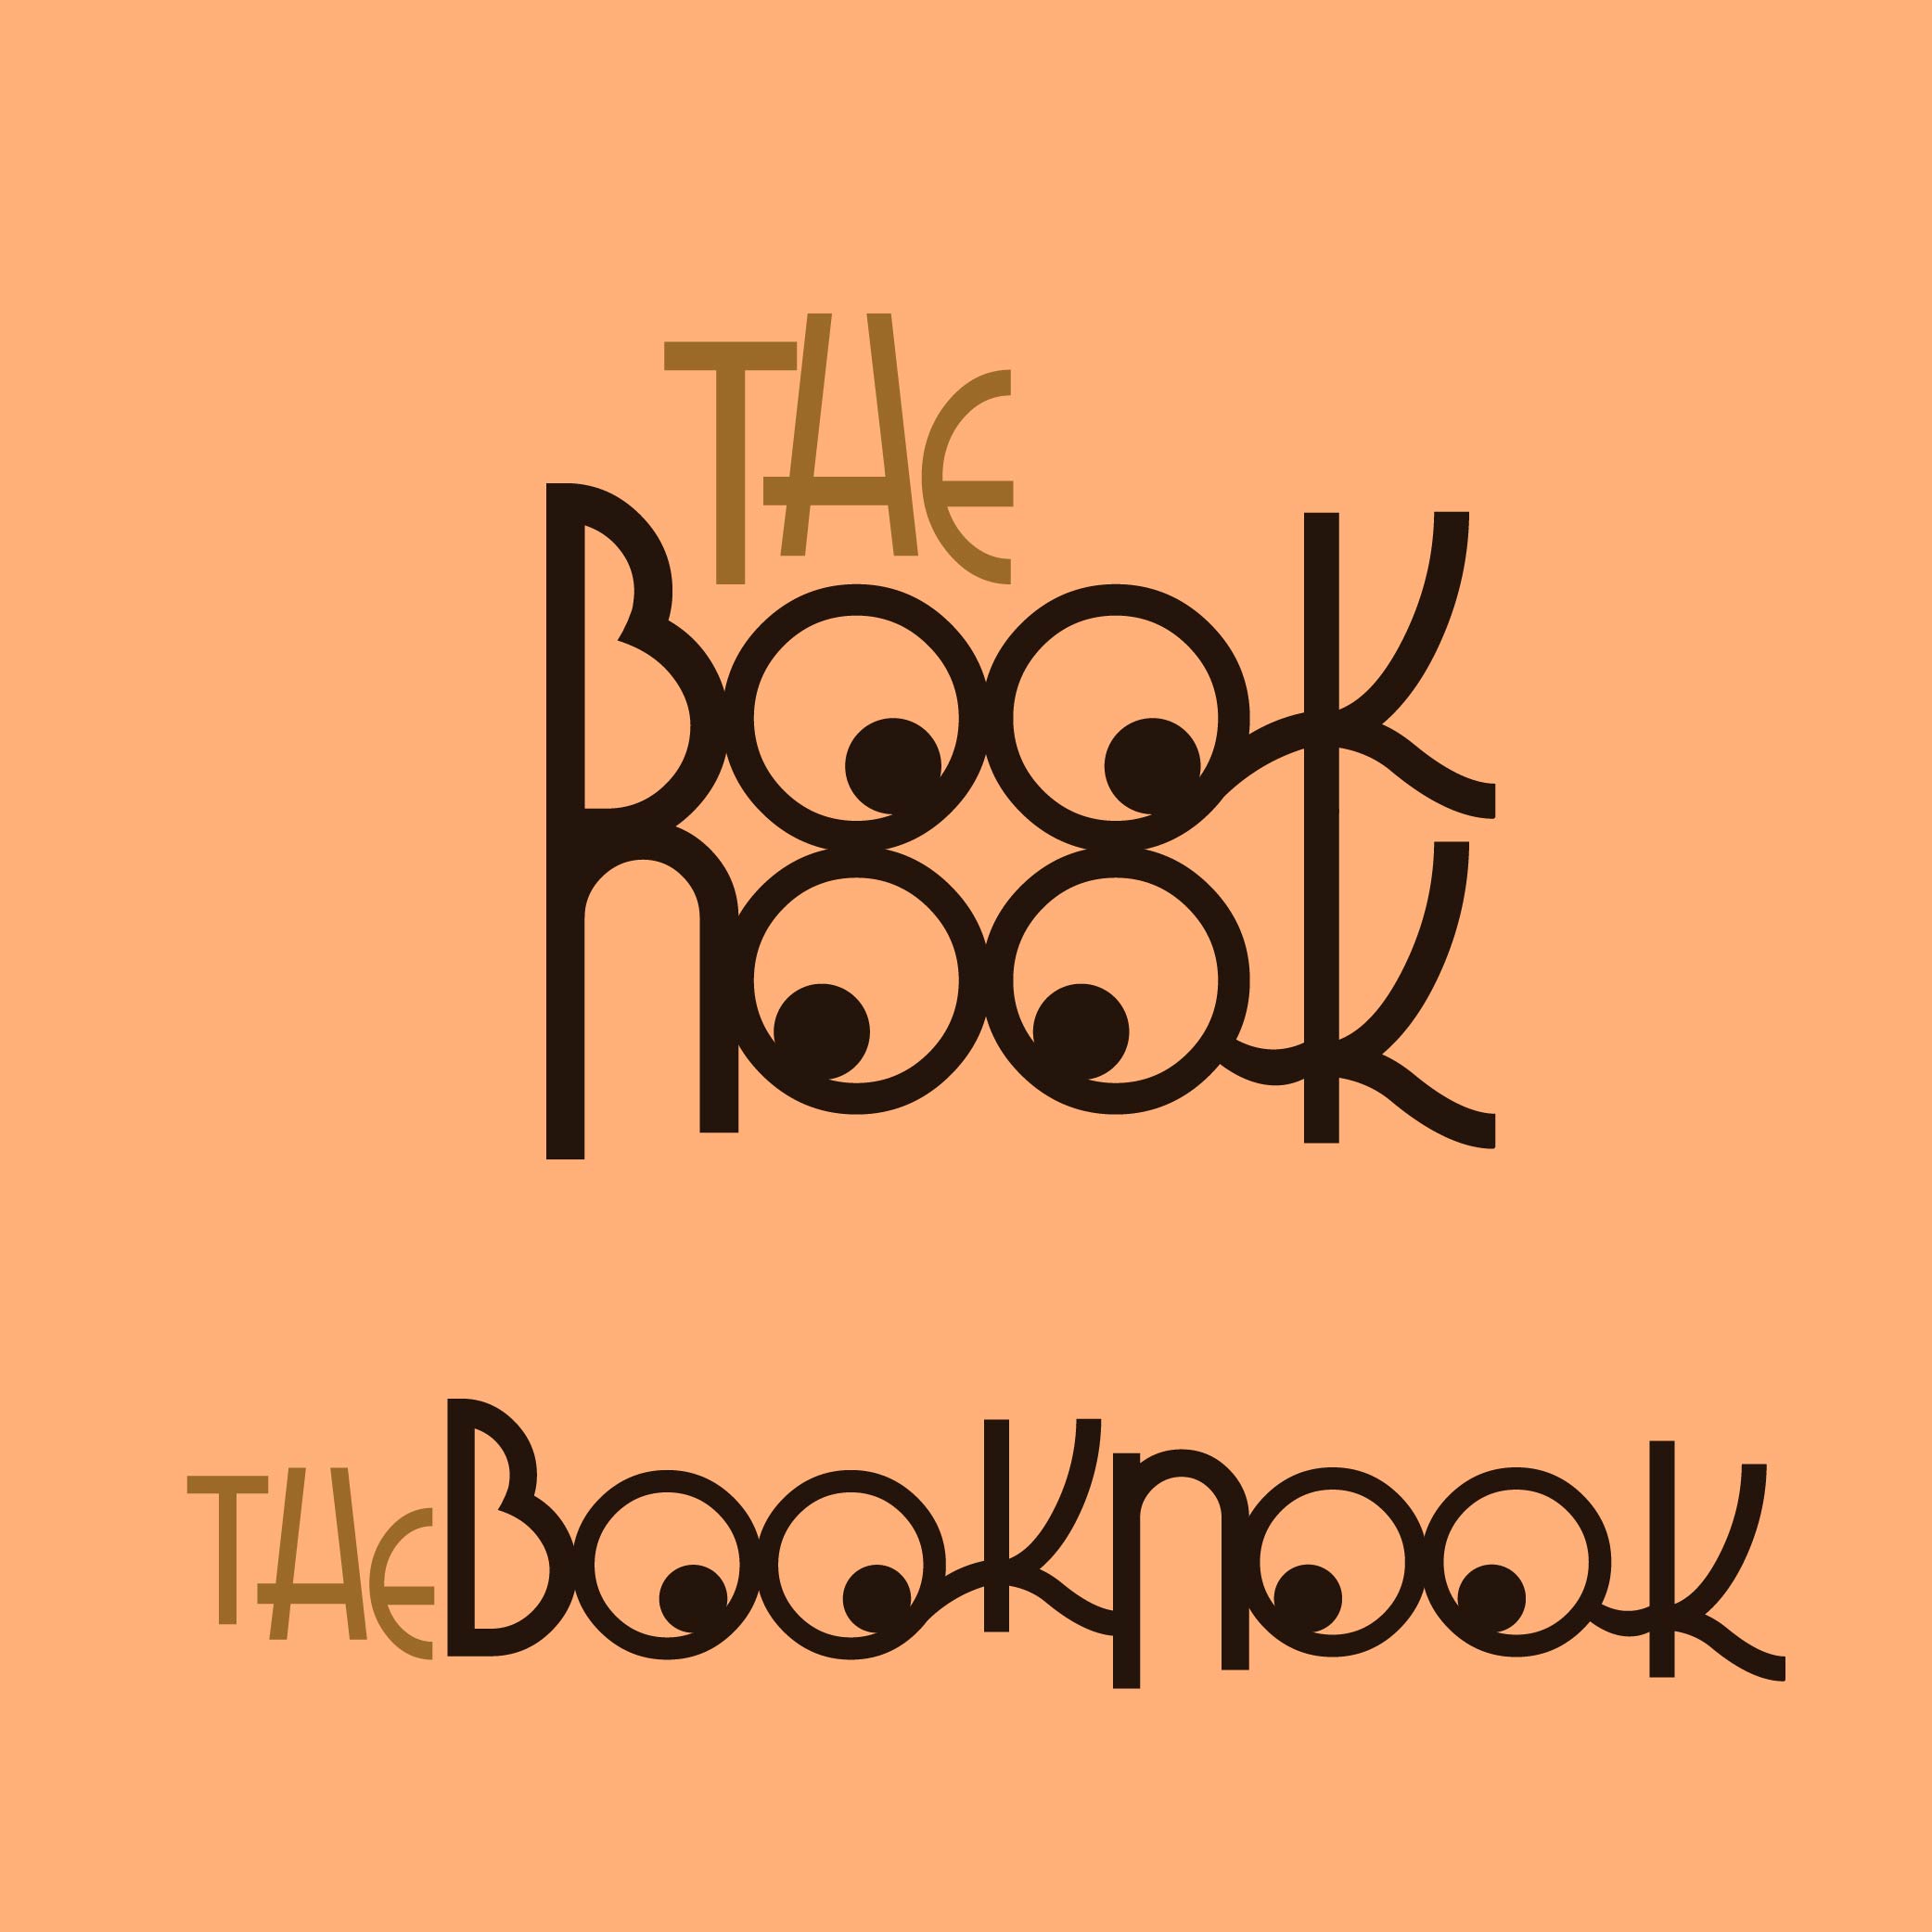 book nook logo versions